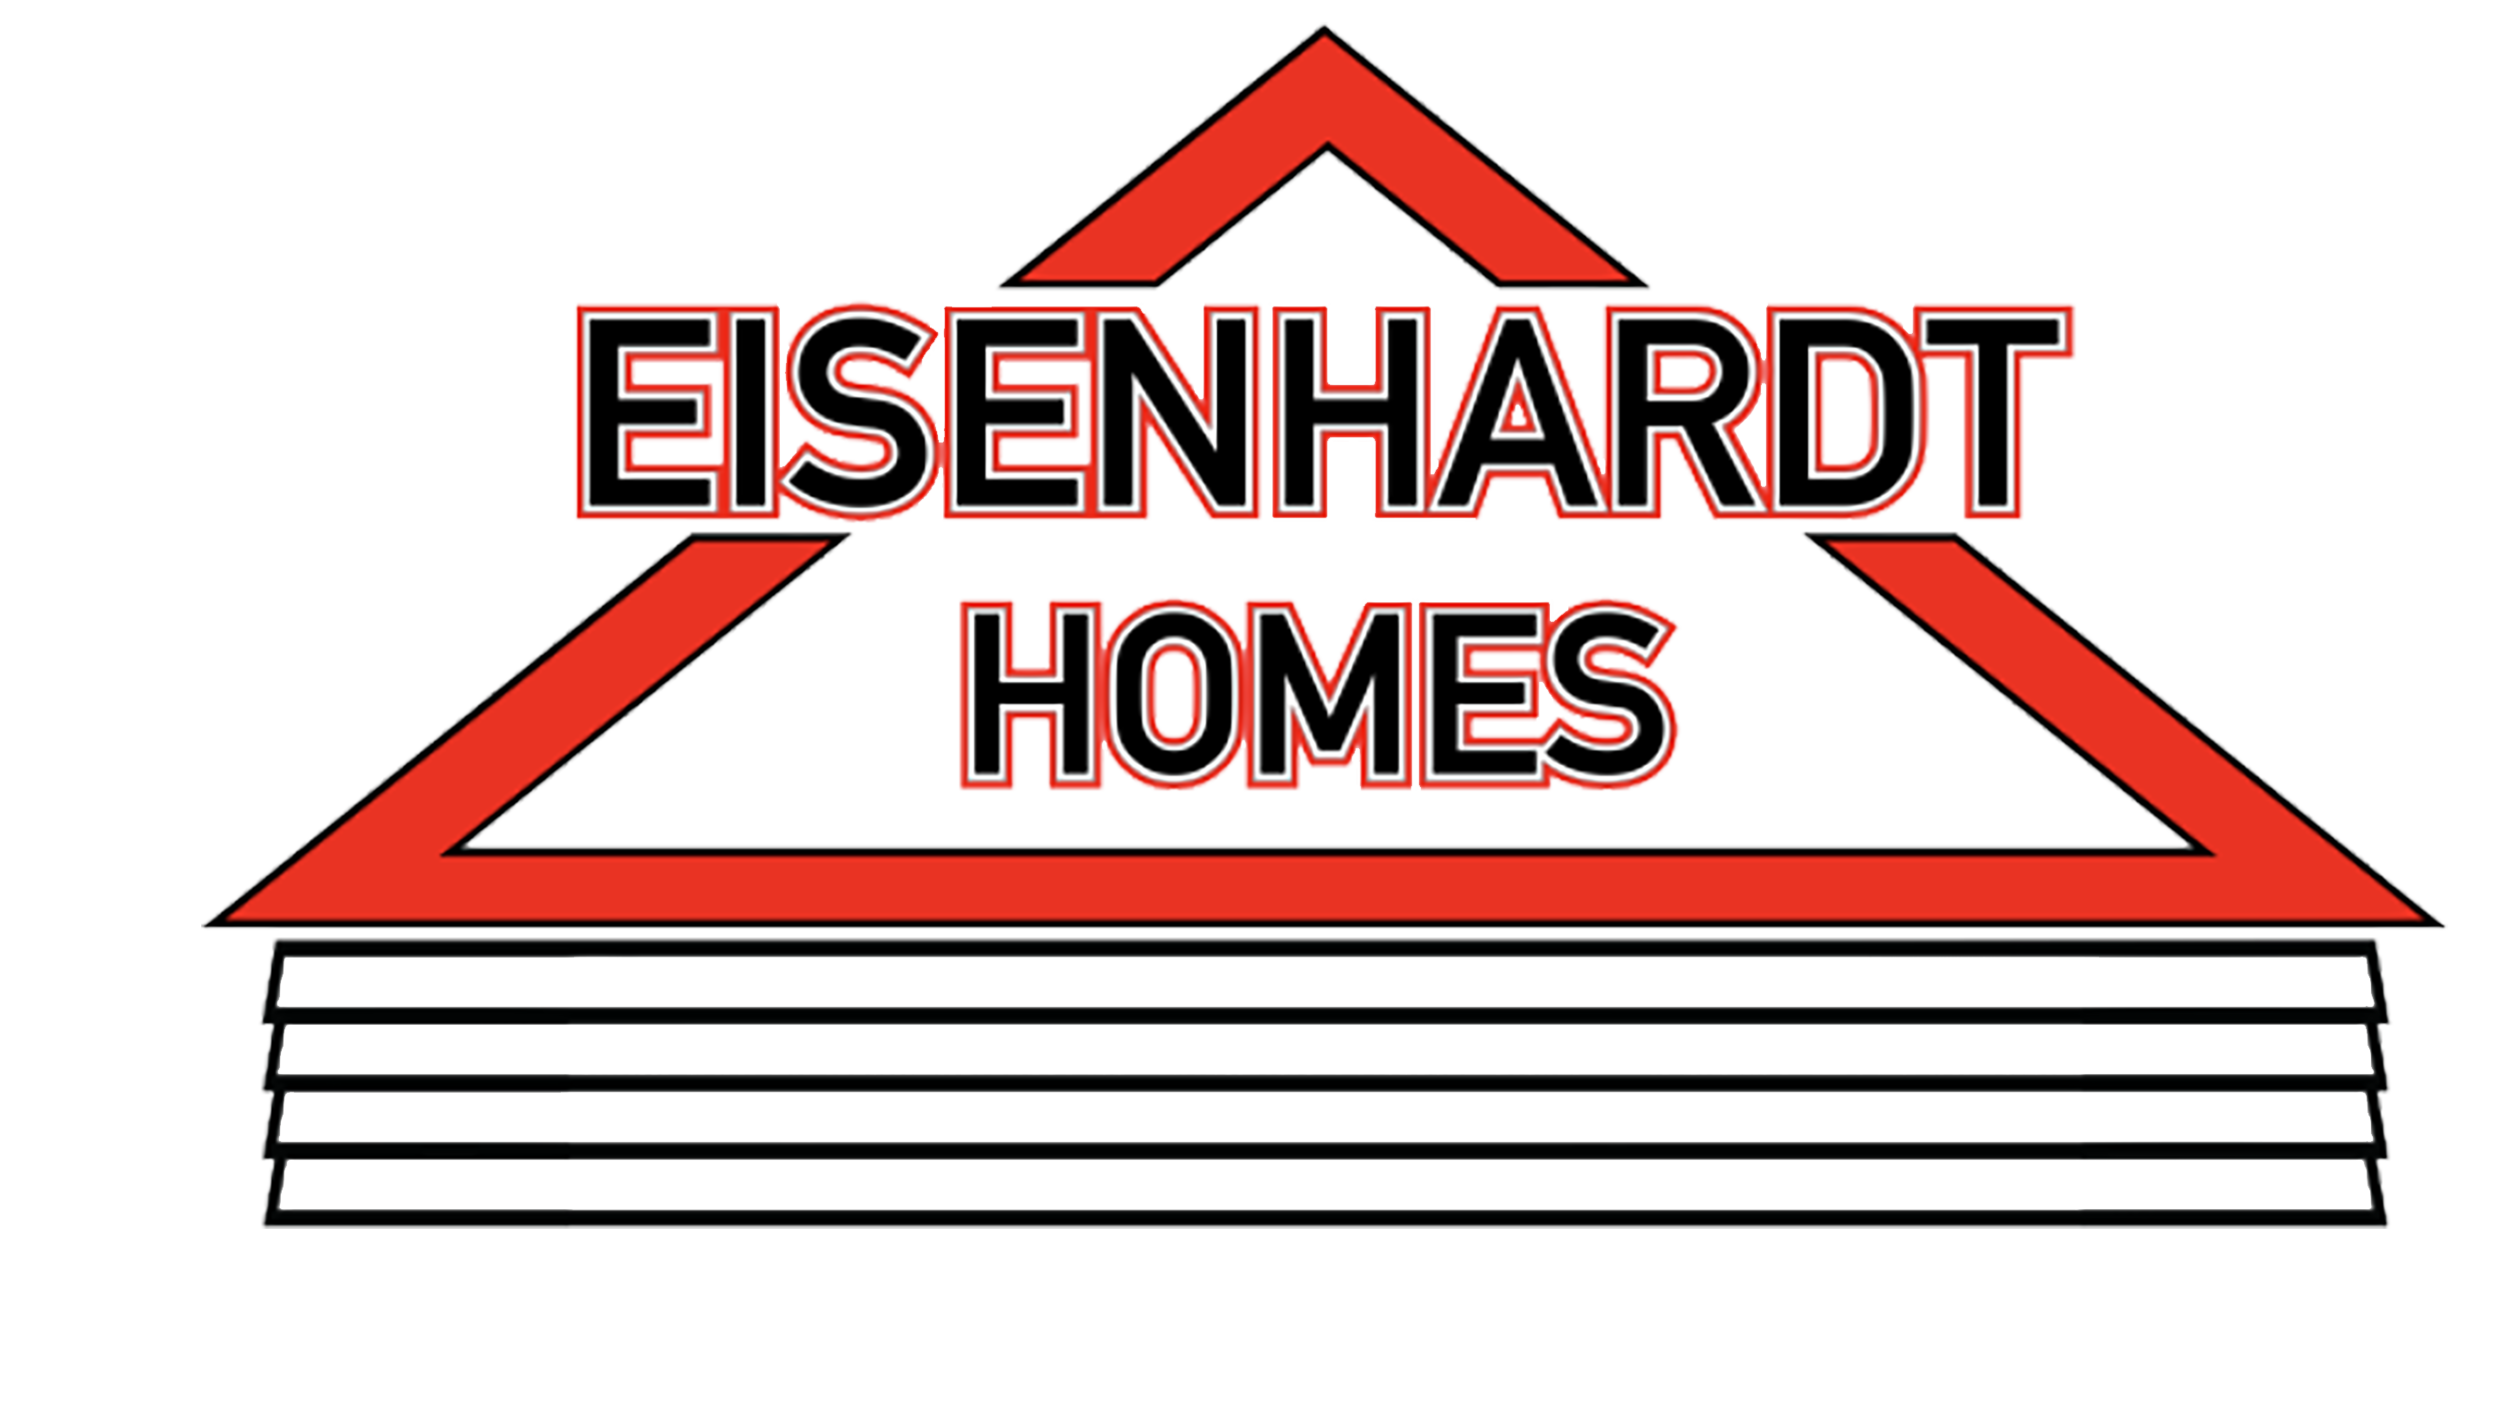 Eisenhardt Homes